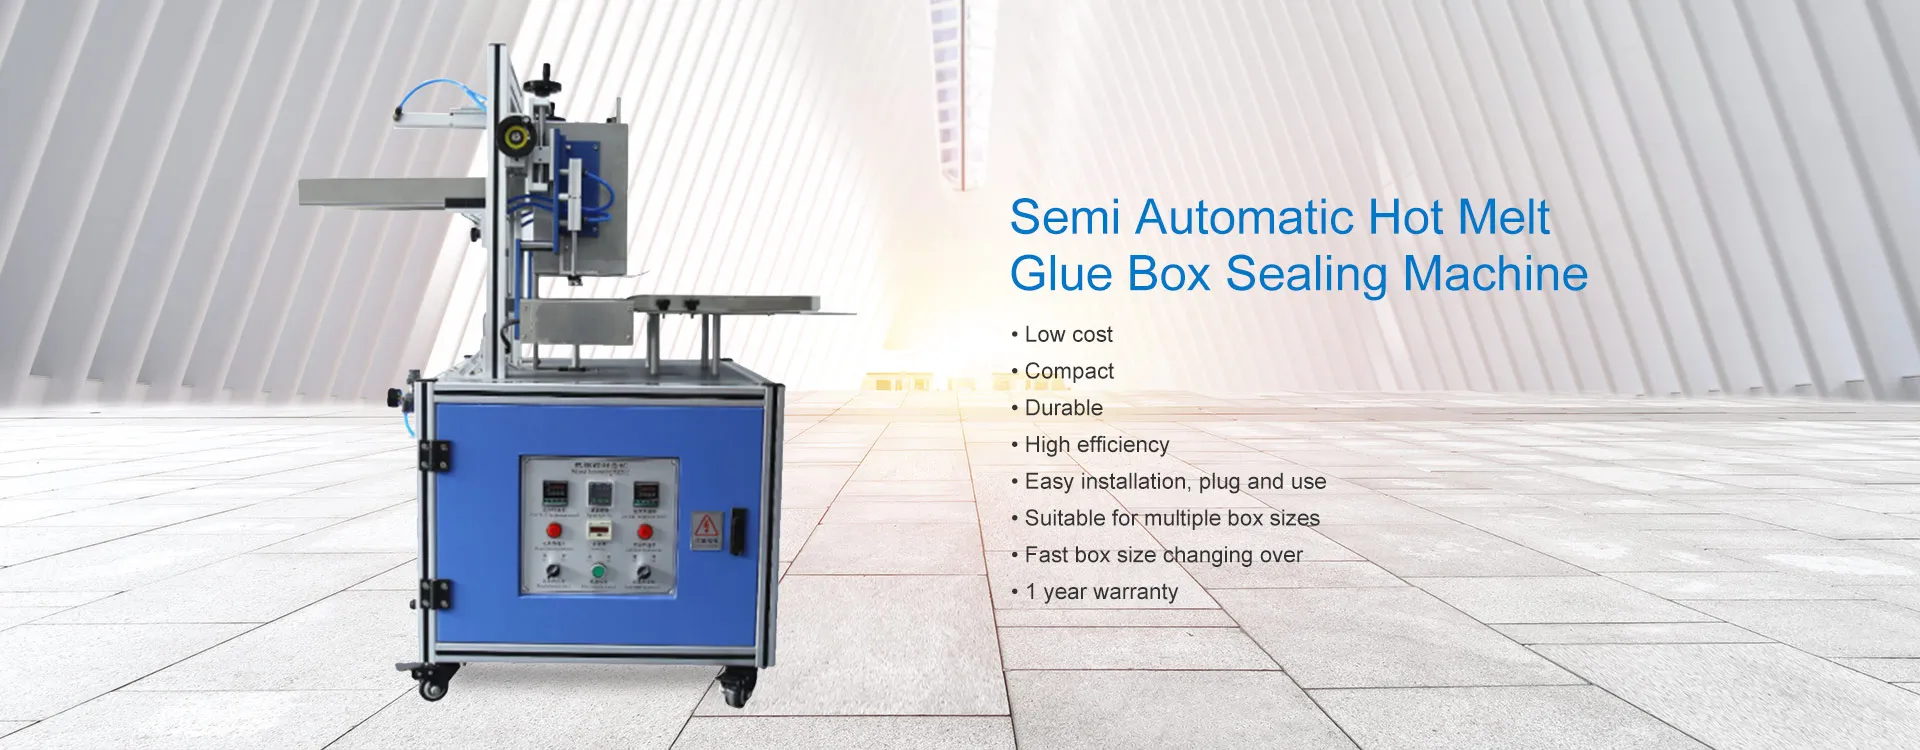 Semi-Automatic Hot Melt Glue Box Sealing Machine